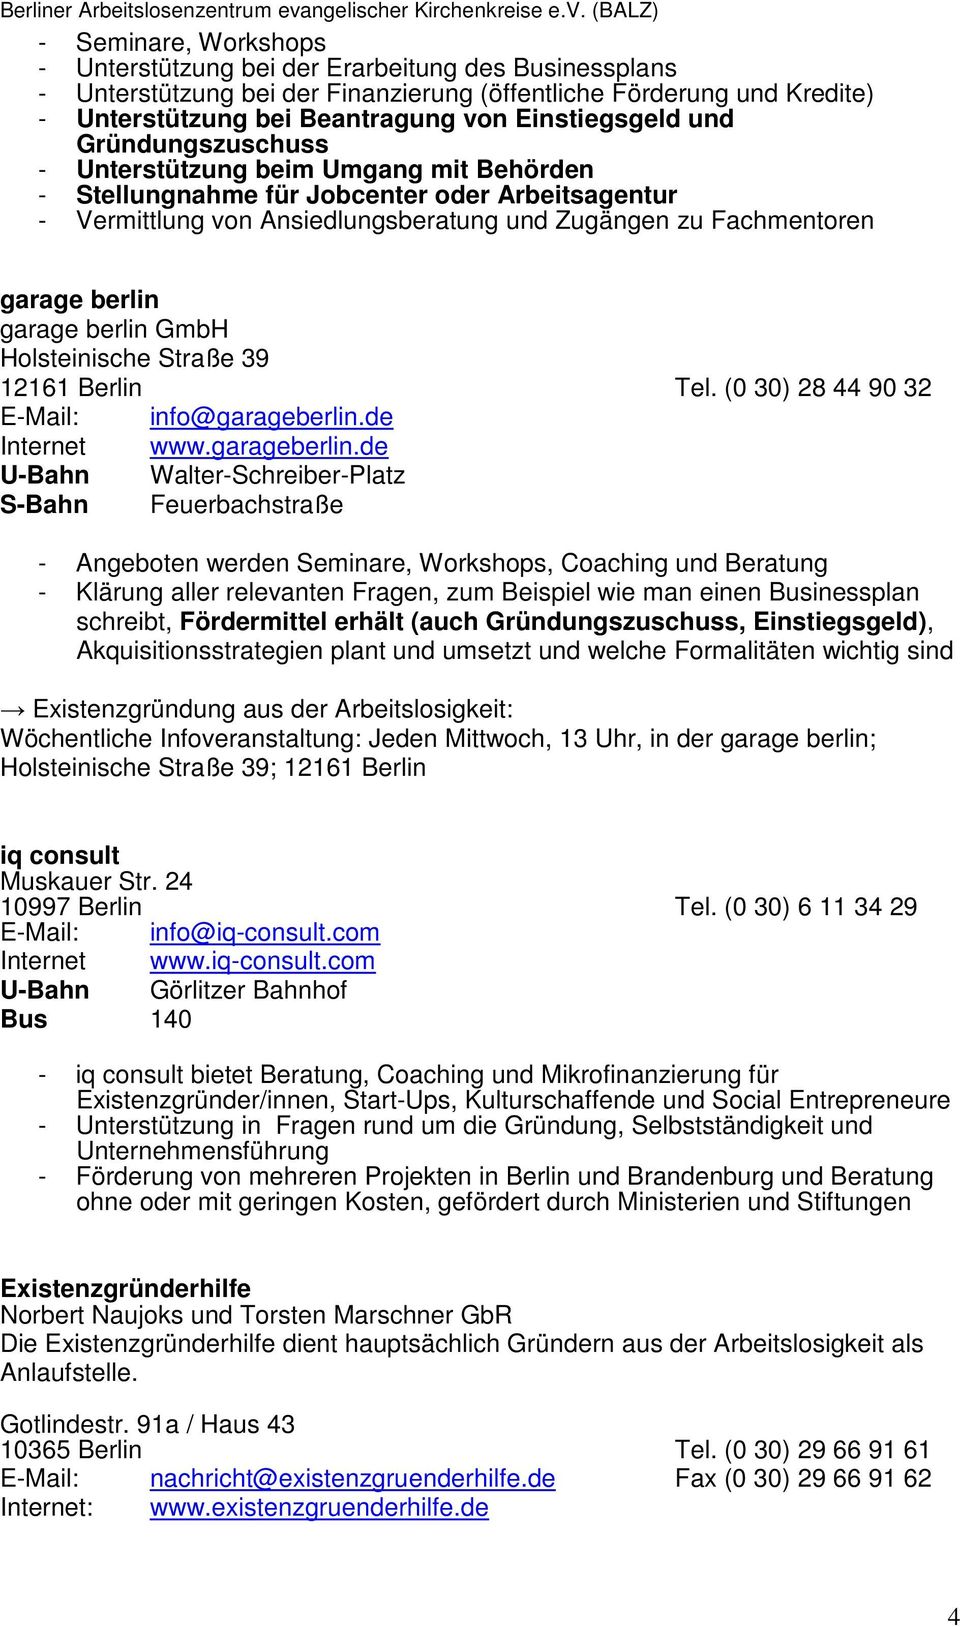 garage berlin GmbH Holsteinische Straße 39 12161 Berlin Tel. (0 30) 28 44 90 32 E-Mail: info@garageberlin.